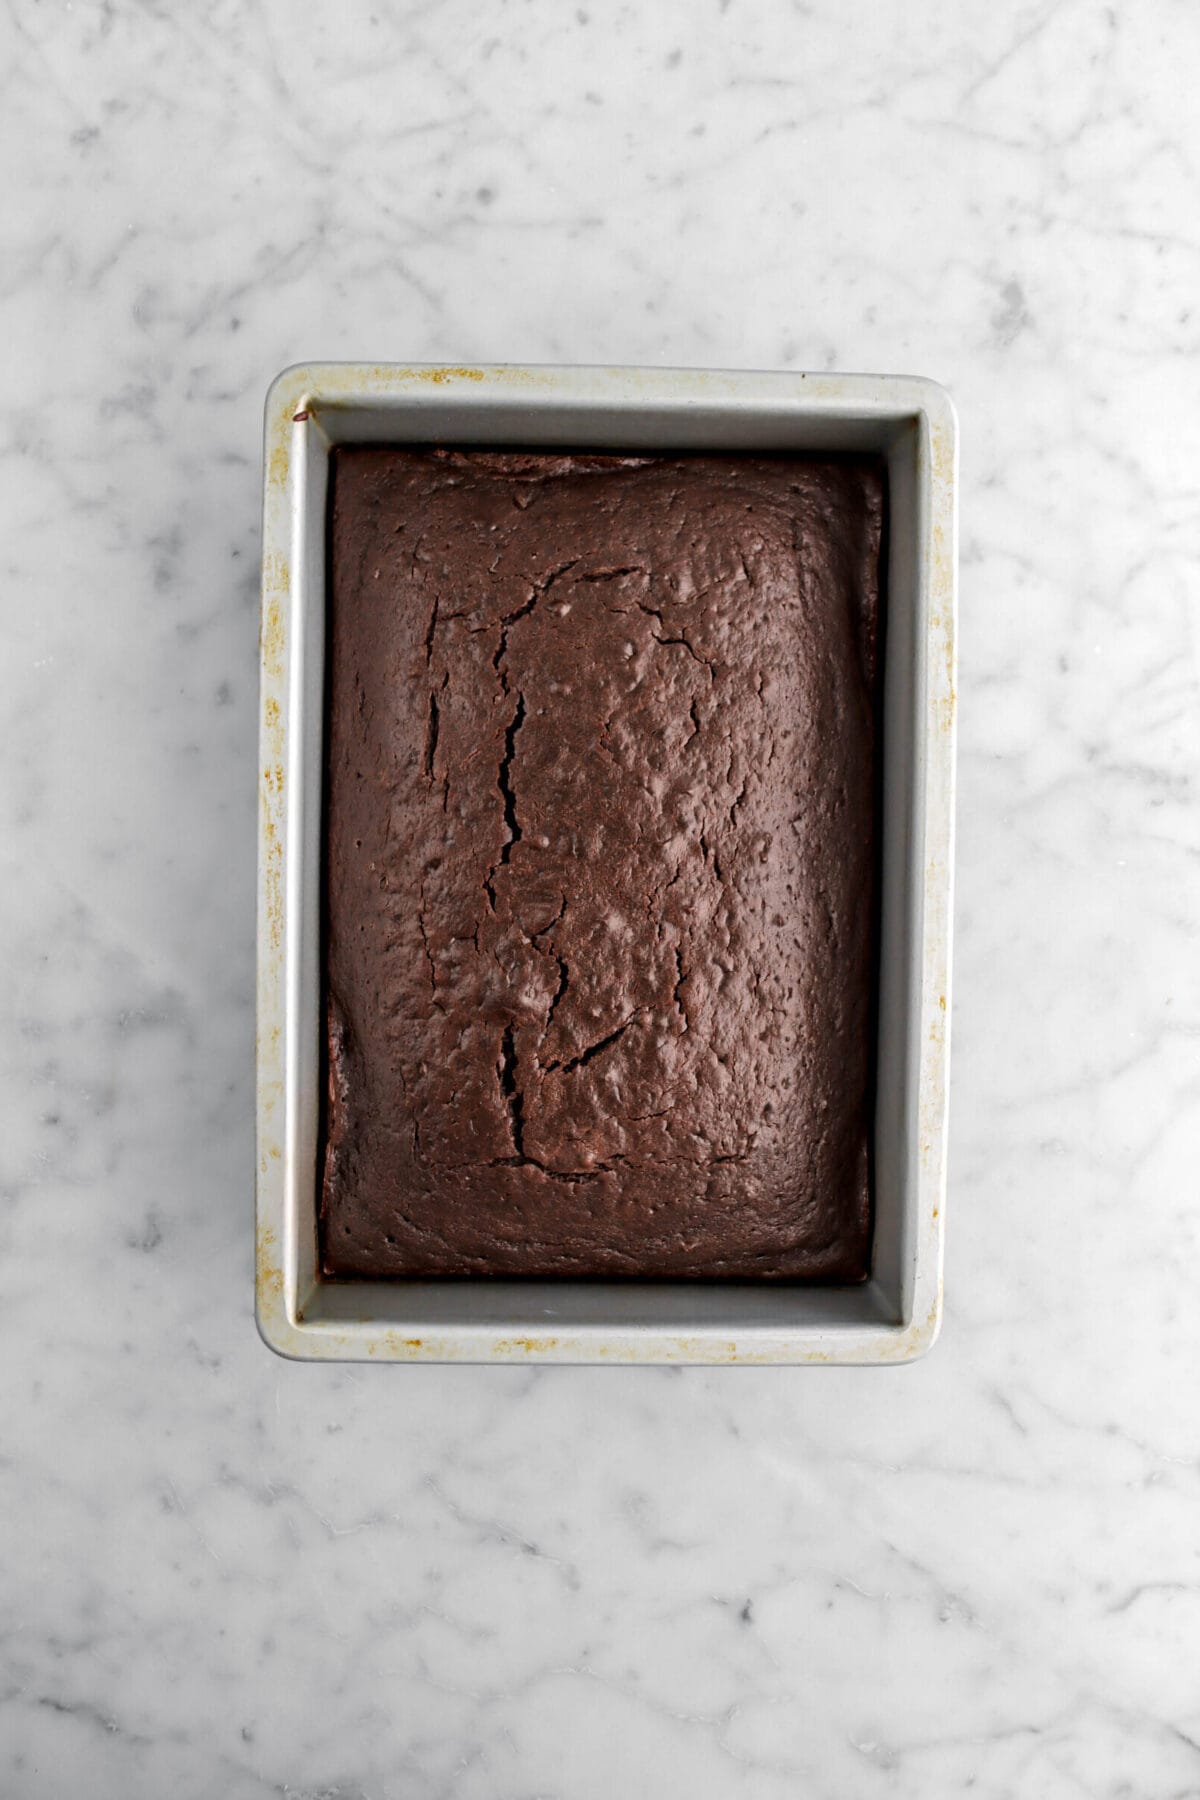 baked chocolate cake in rectangular cake pan.